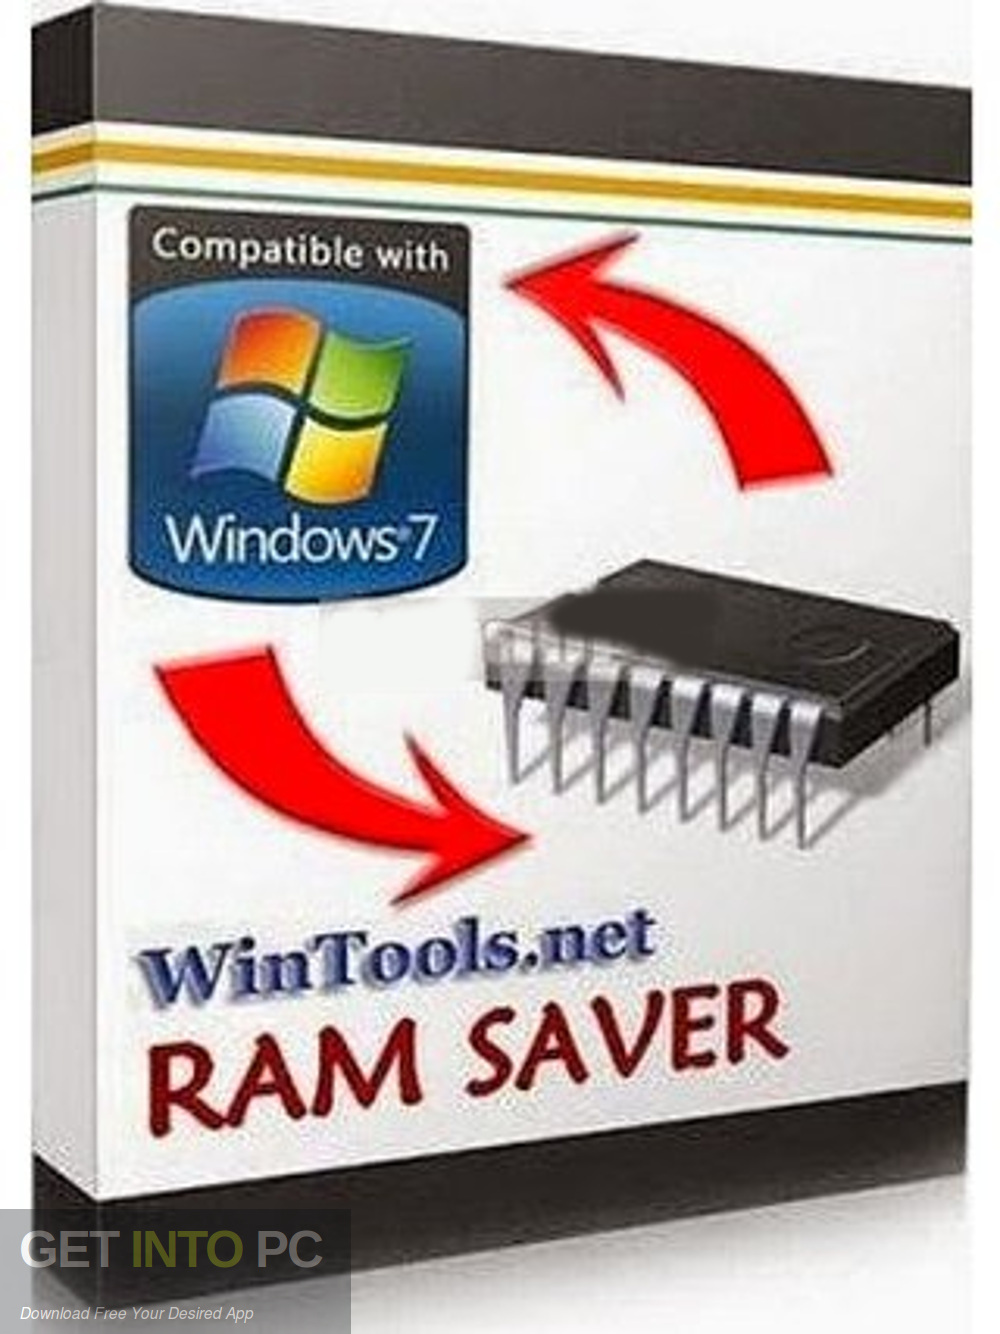 RAM Saver Pro Free Download